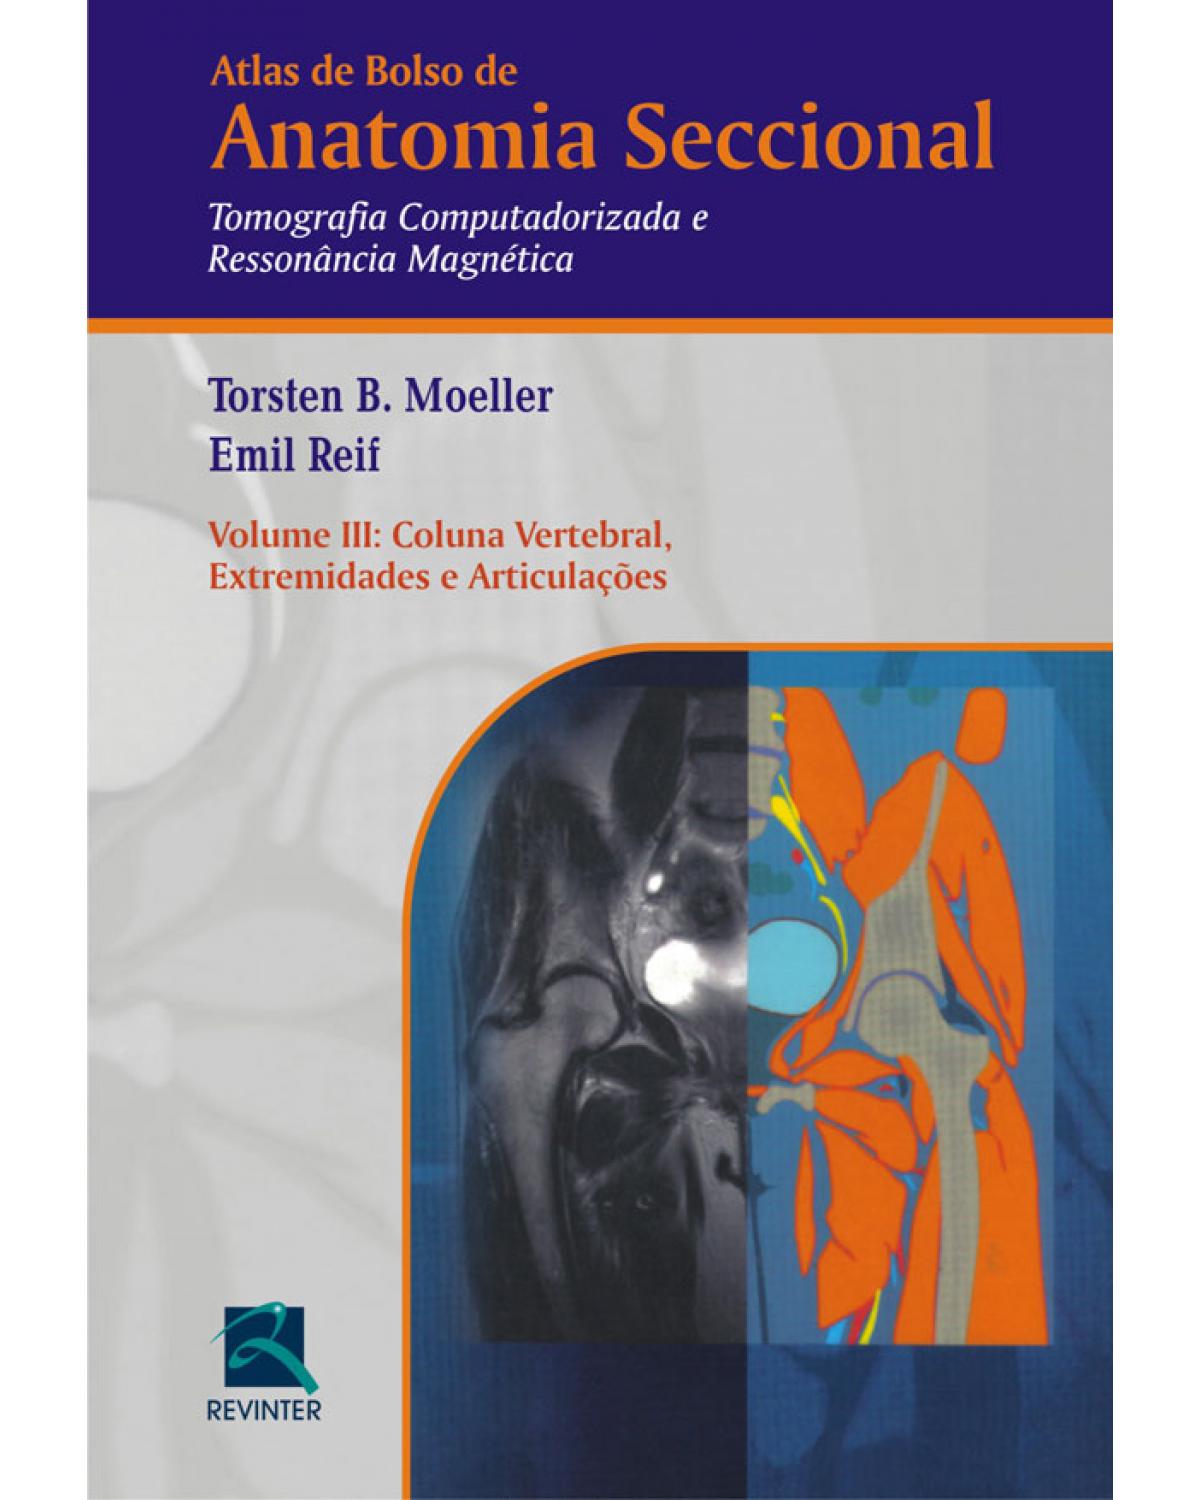 Atlas de bolso de anatomia seccional - Volume 3: tomografia computadorizada e ressonância magnética - Coluna vertebral, extremidades e articulações - 3ª Edição | 2010